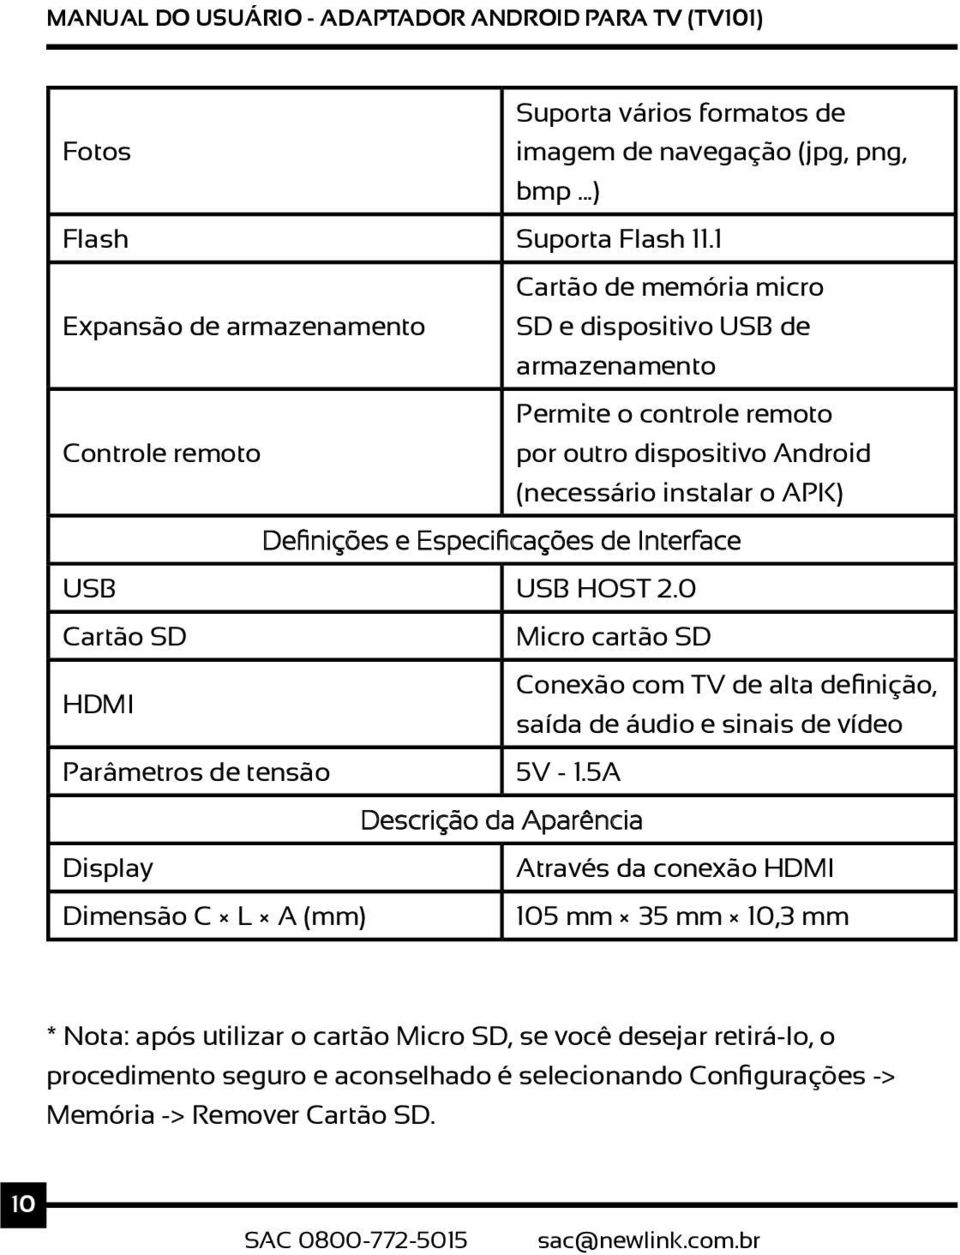 Definições e Especificações de Interface USB USB HOST 2.0 Cartão SD Micro cartão SD Conexão com TV de alta definição, HDMI saída de áudio e sinais de vídeo Parâmetros de tensão 5V - 1.